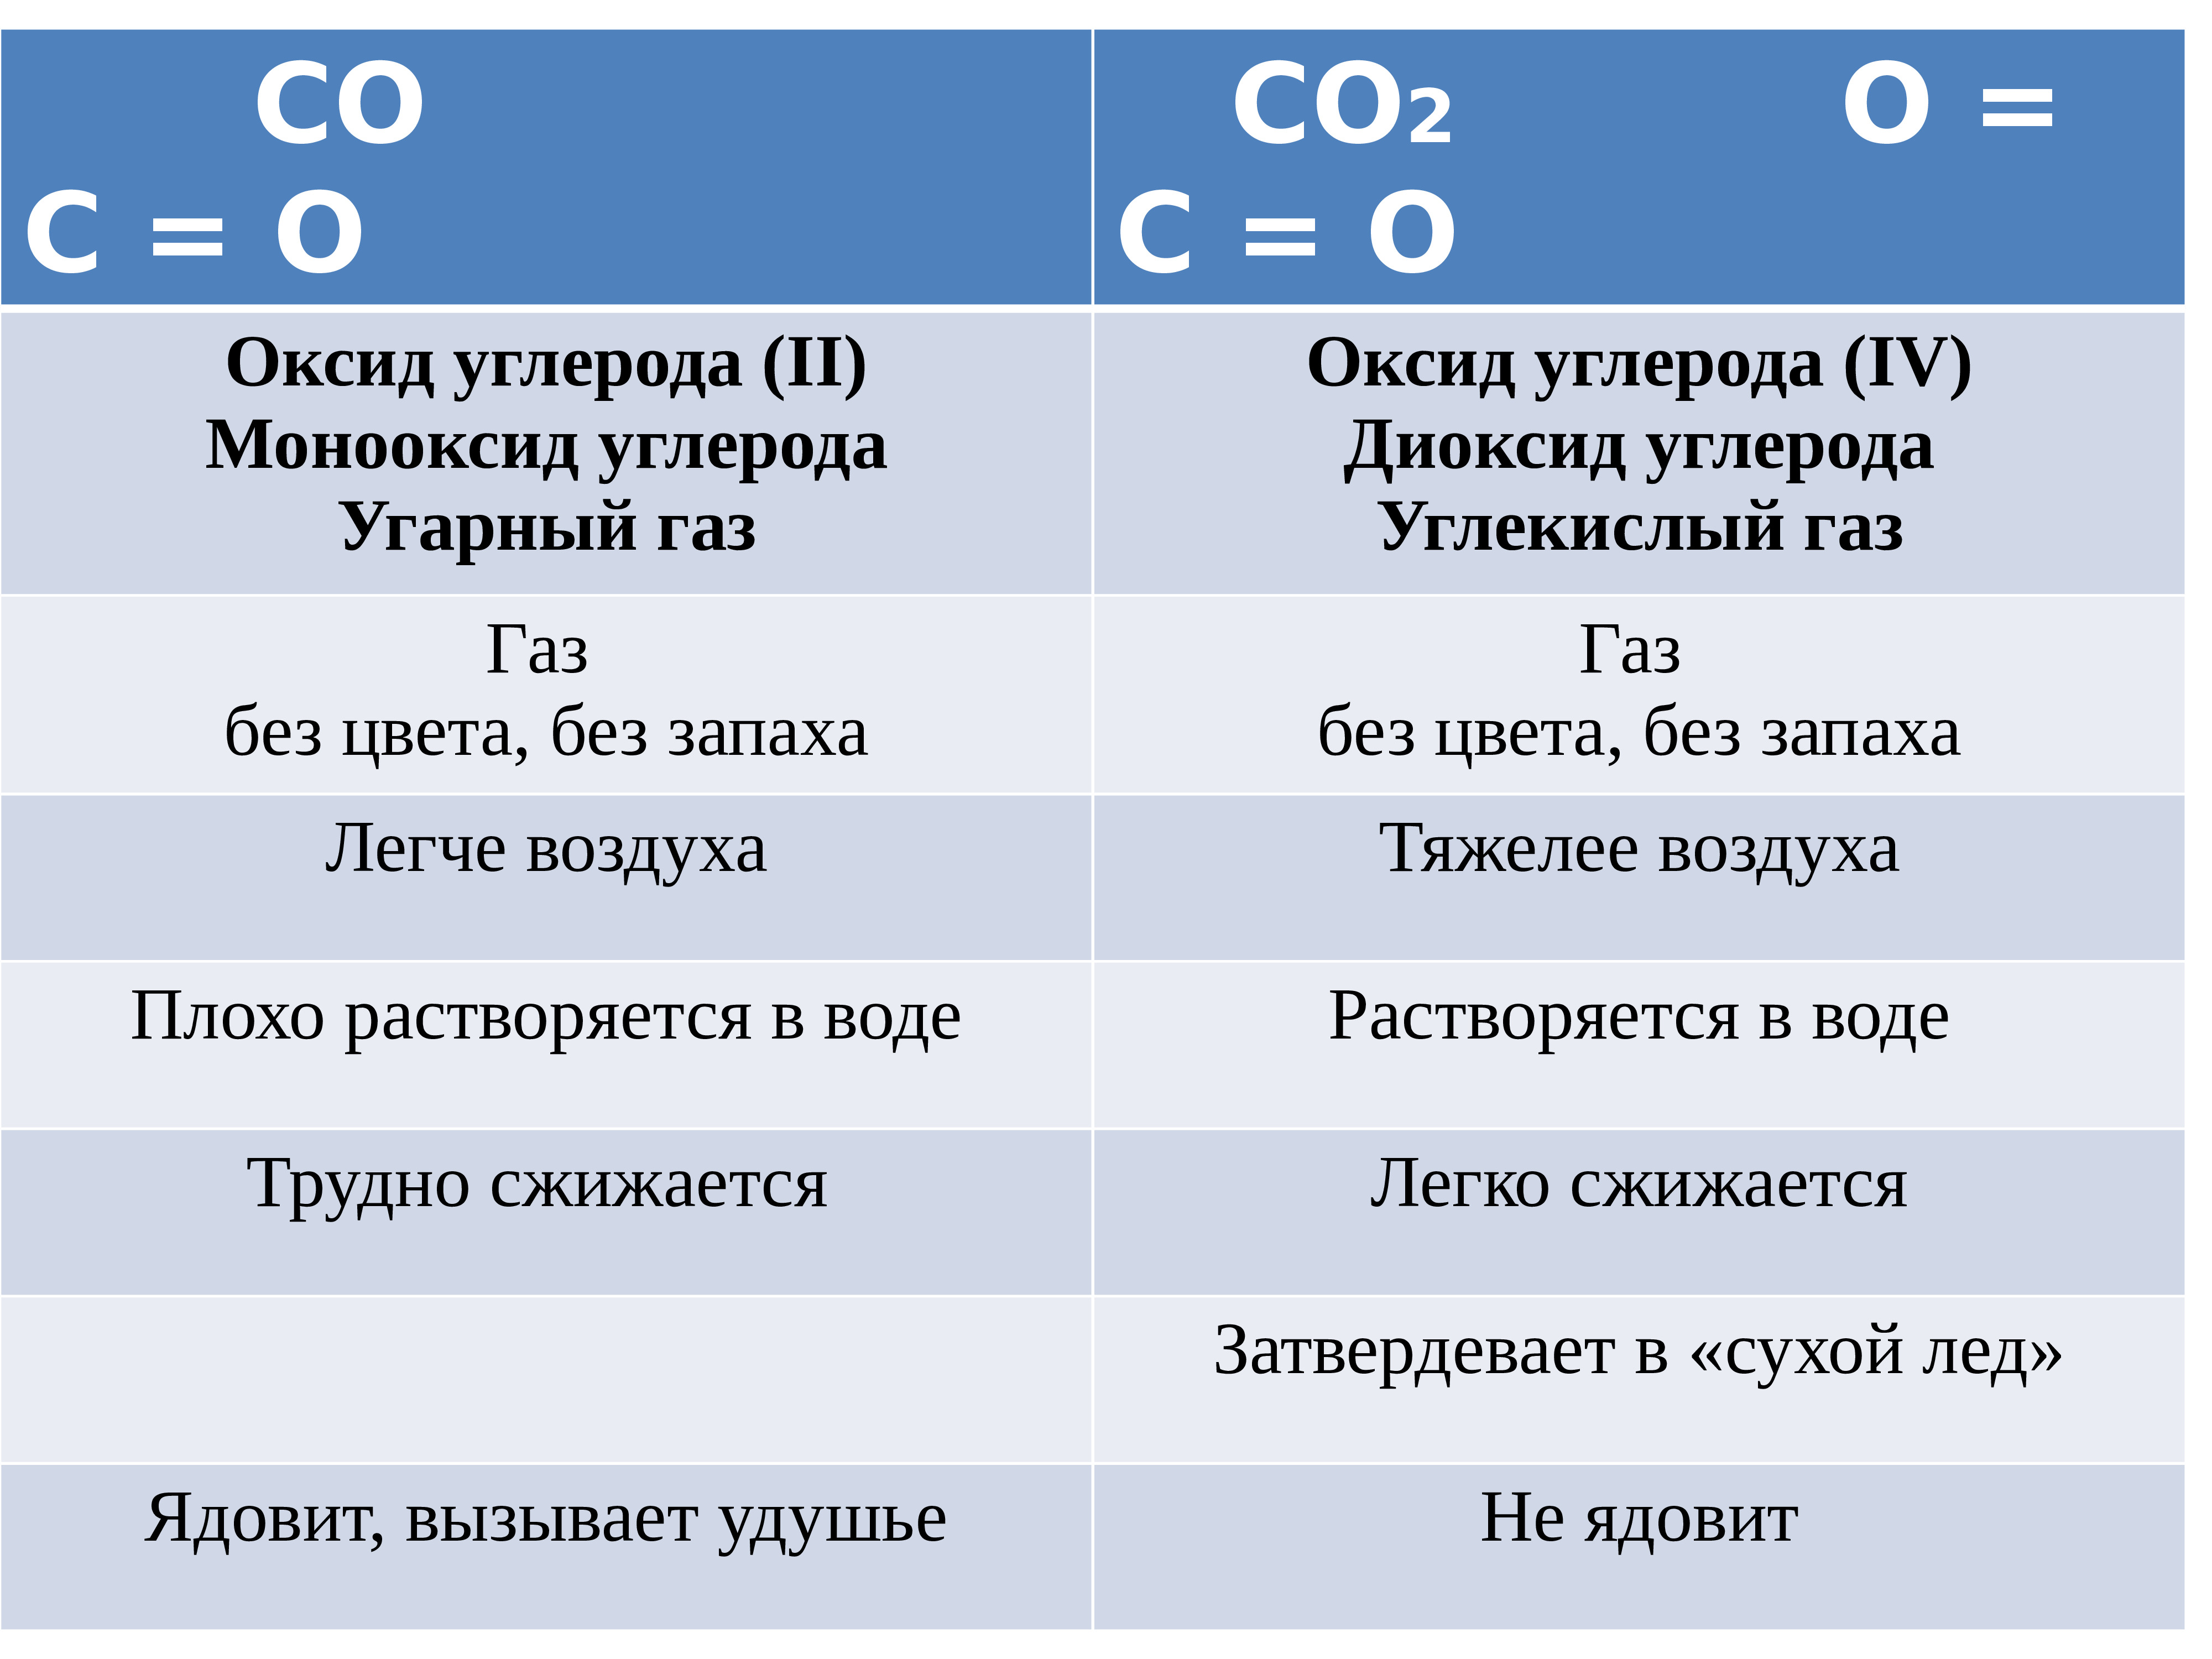 Углекислый газ и кислород сходства и различия. Формулы соединений углерода. Оксид углерода 2 легче или тяжелее воздуха. Uglerod oksid ugleroda. Таблица угарного газа.